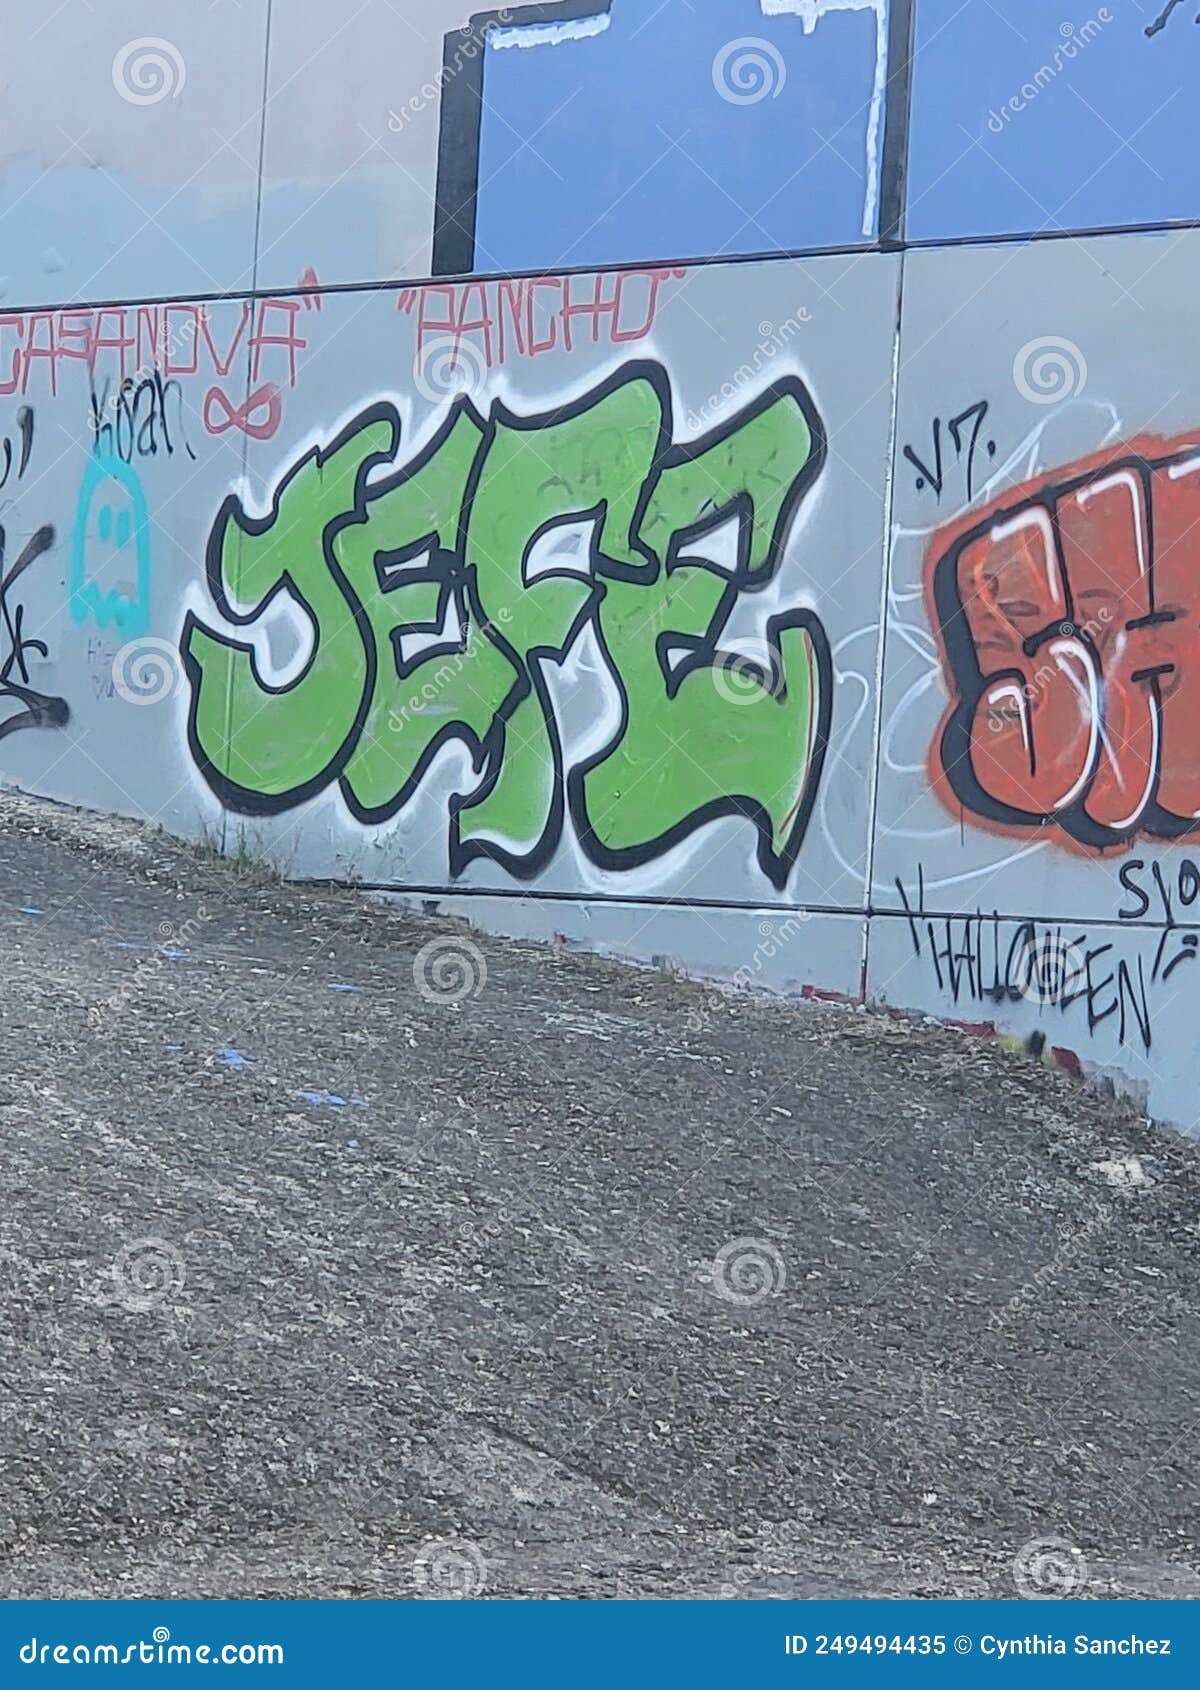 jefe graffiti art bridge mural